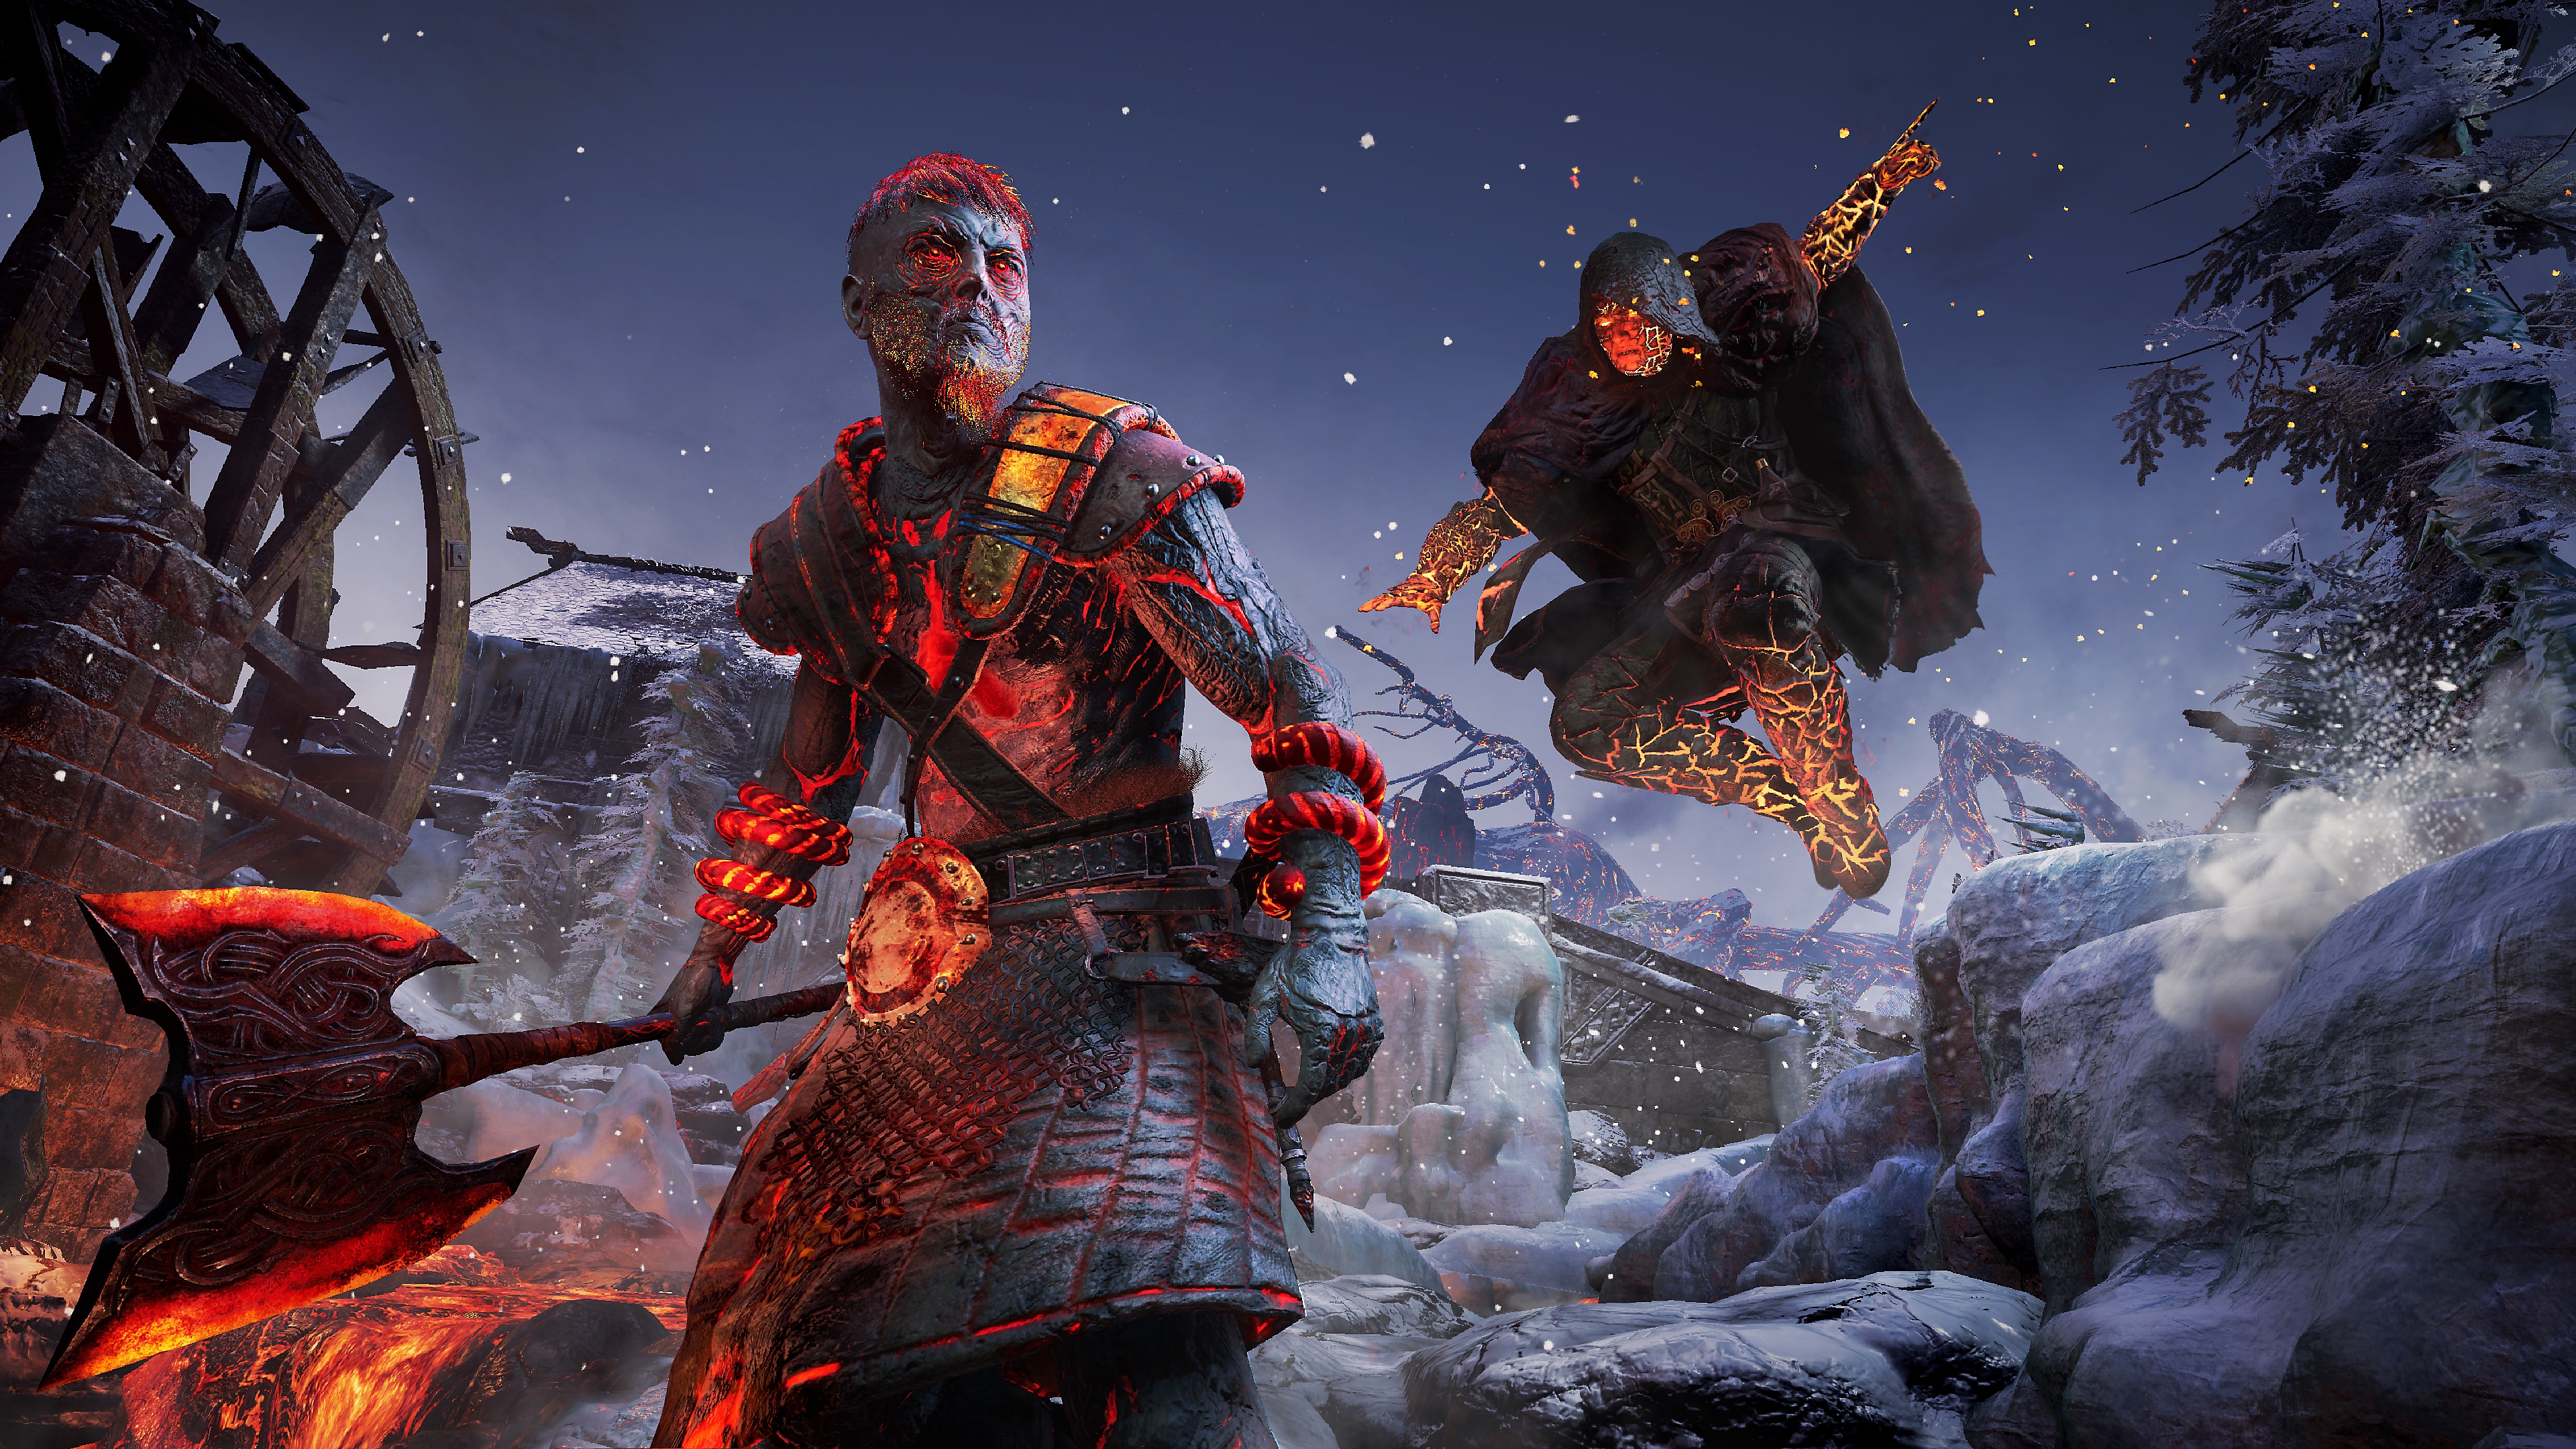 Captura de pantalla de Assassin's Creed Valhalla Dawn of Ragnarok que muestra al personaje principal lanzando un ataque sorpresa sobre un enemigo